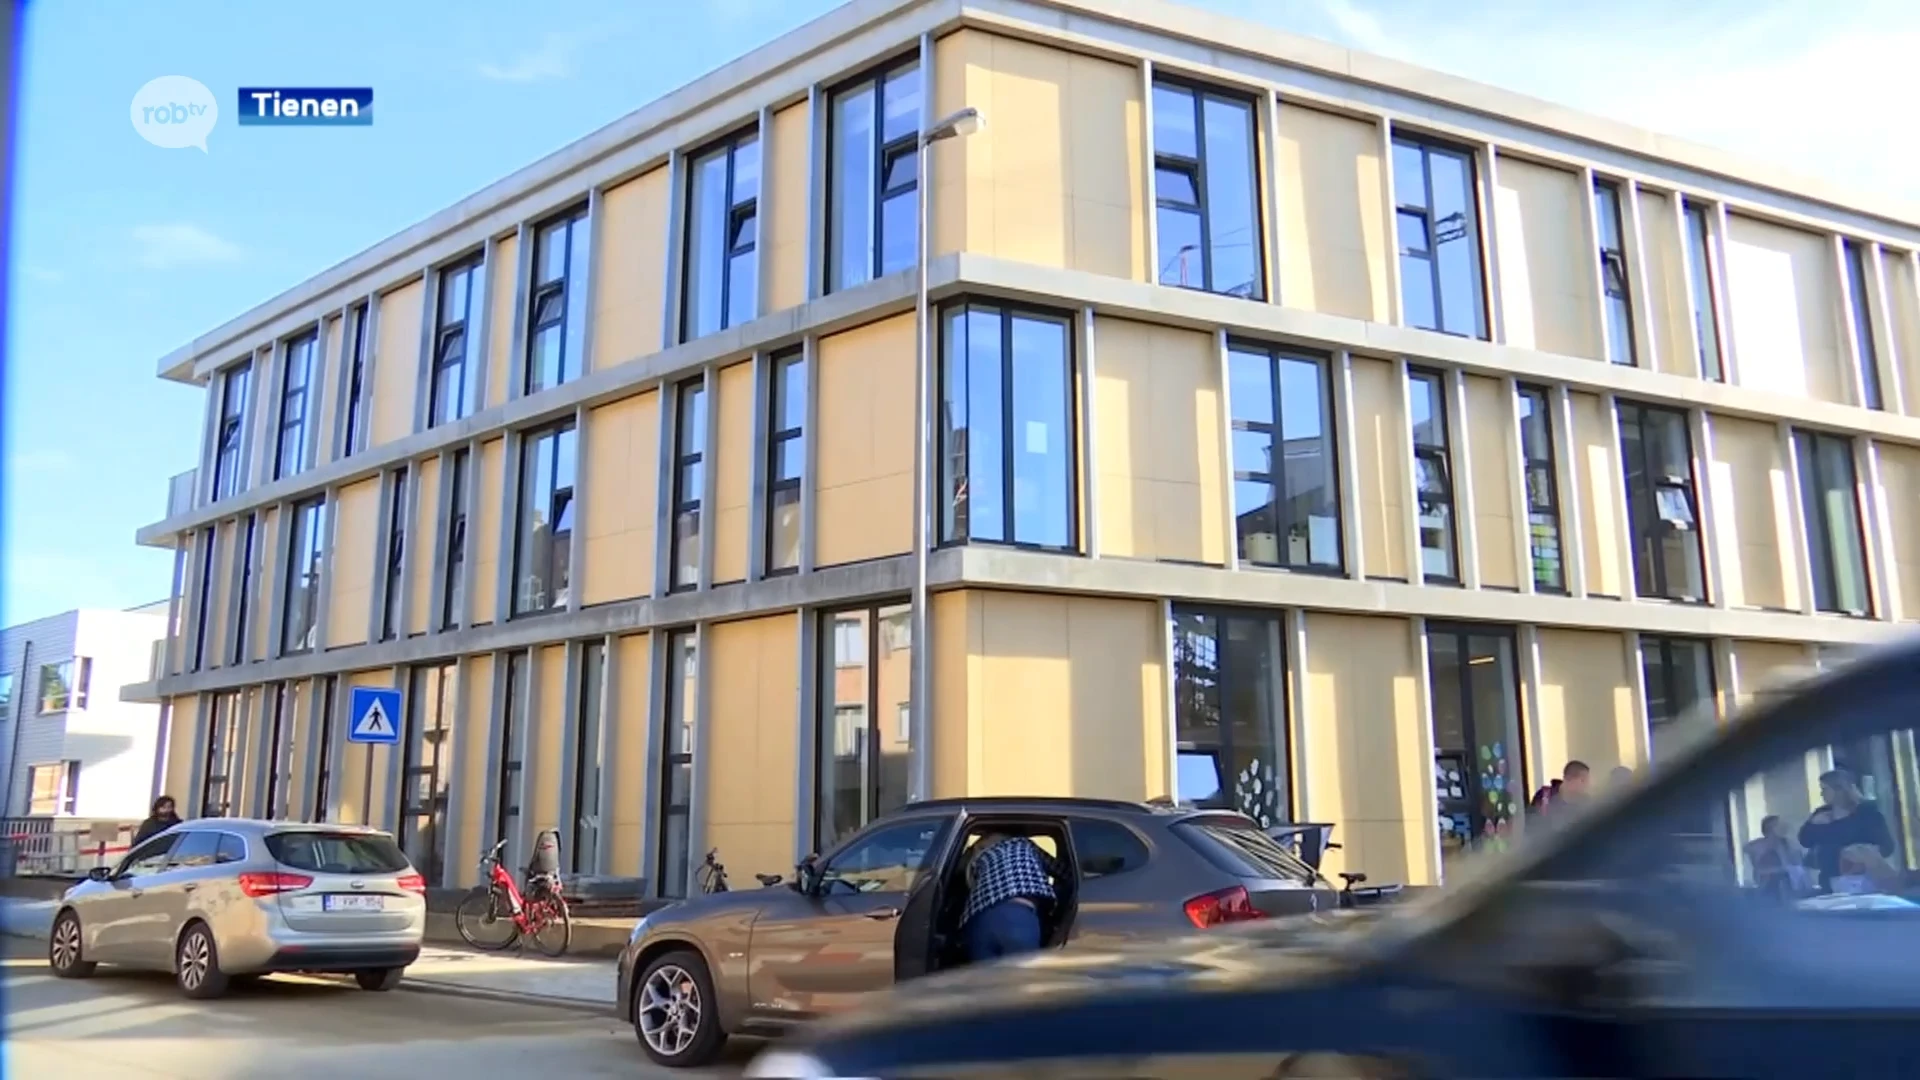 Nieuwe basisschool in Tienen officieel geopend